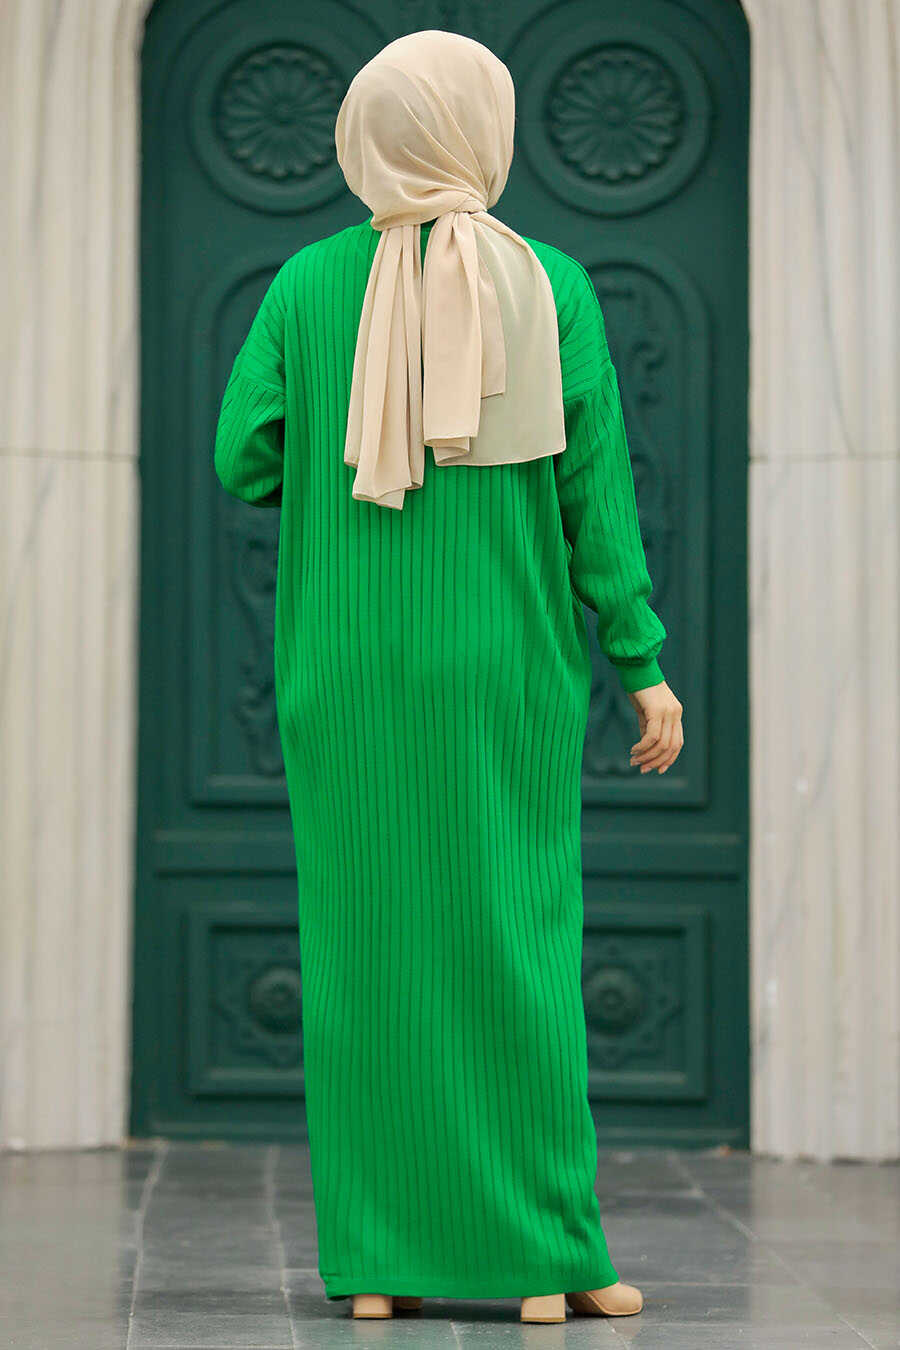 Neva Style - Green Knitwear Modest Dress 20161Y